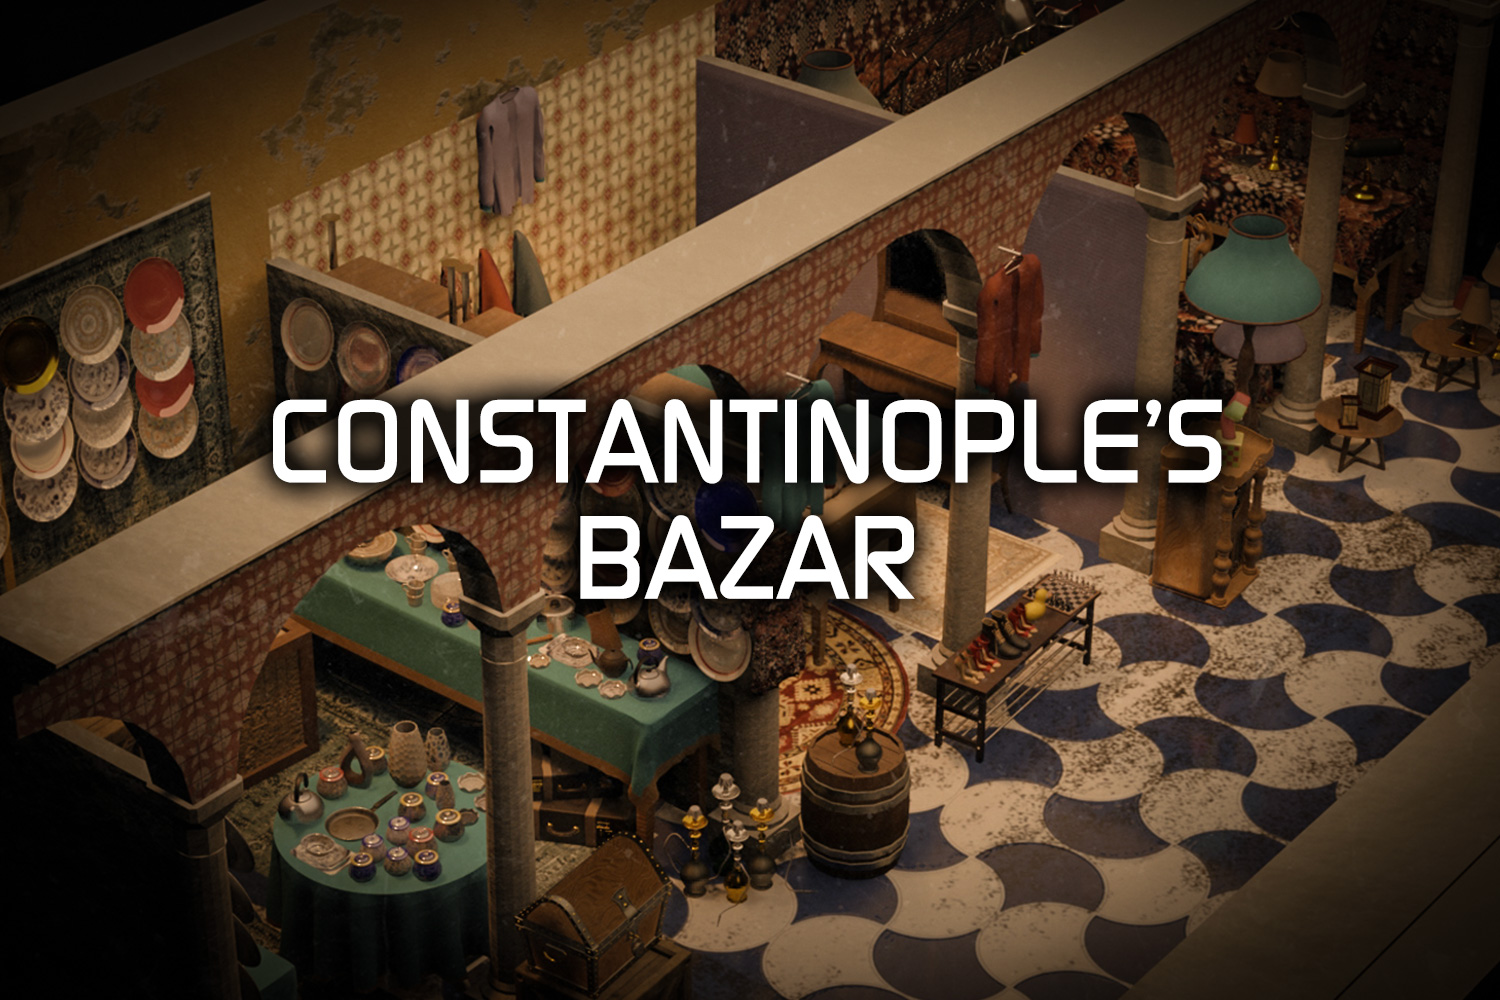 CONSTANTINOPLE’S BAZAR